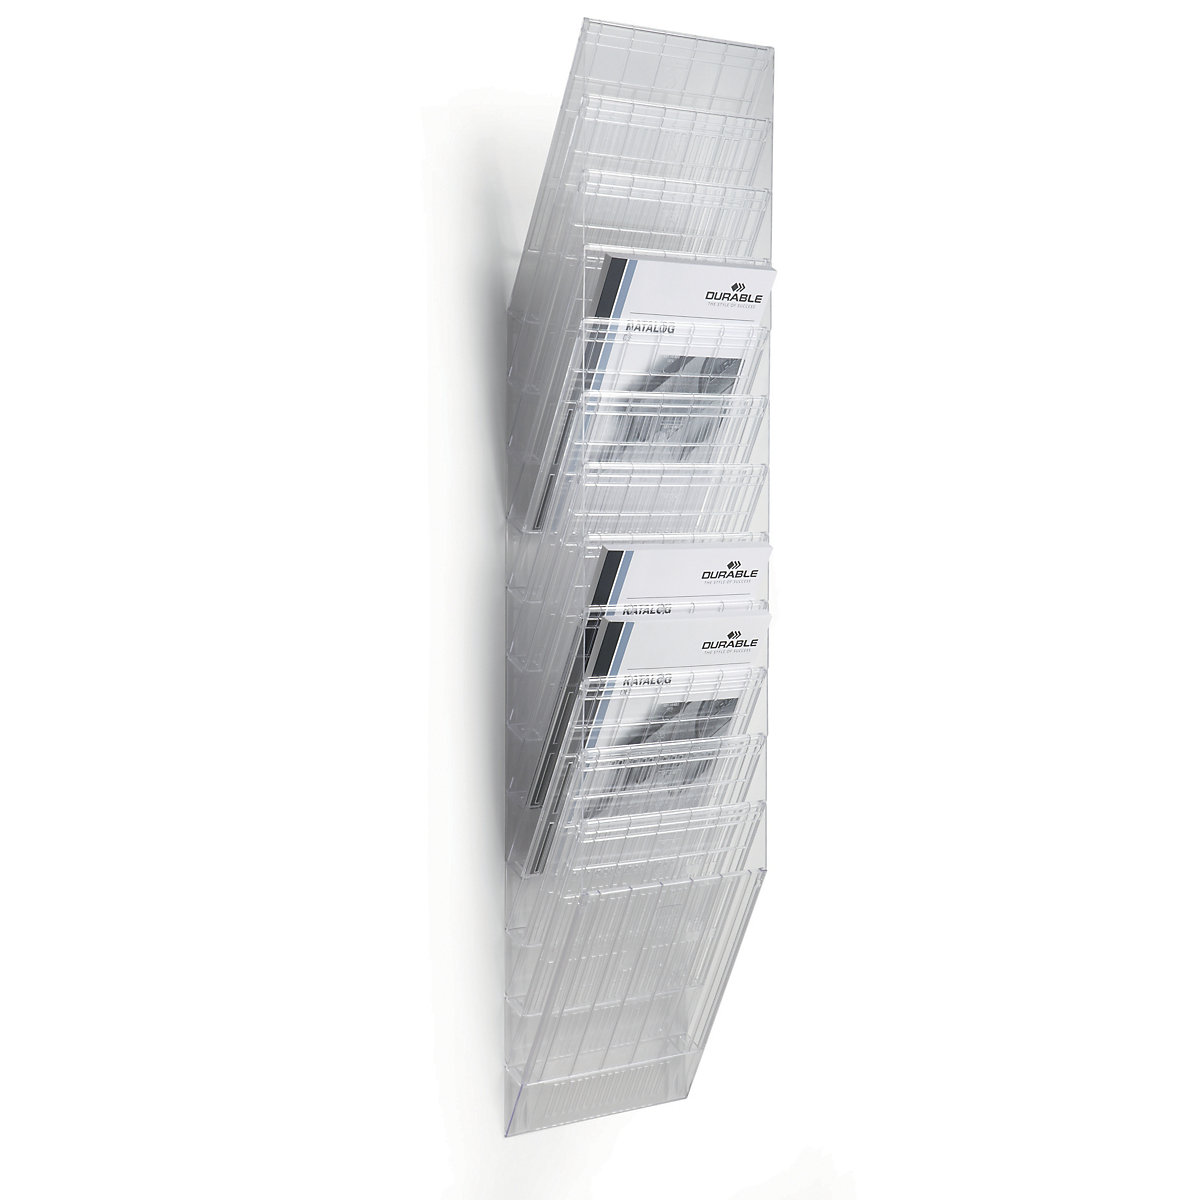 DURABLE Wandprospektspender, Hochformat, 12 x DIN A4, VE 2 Stk, transparent